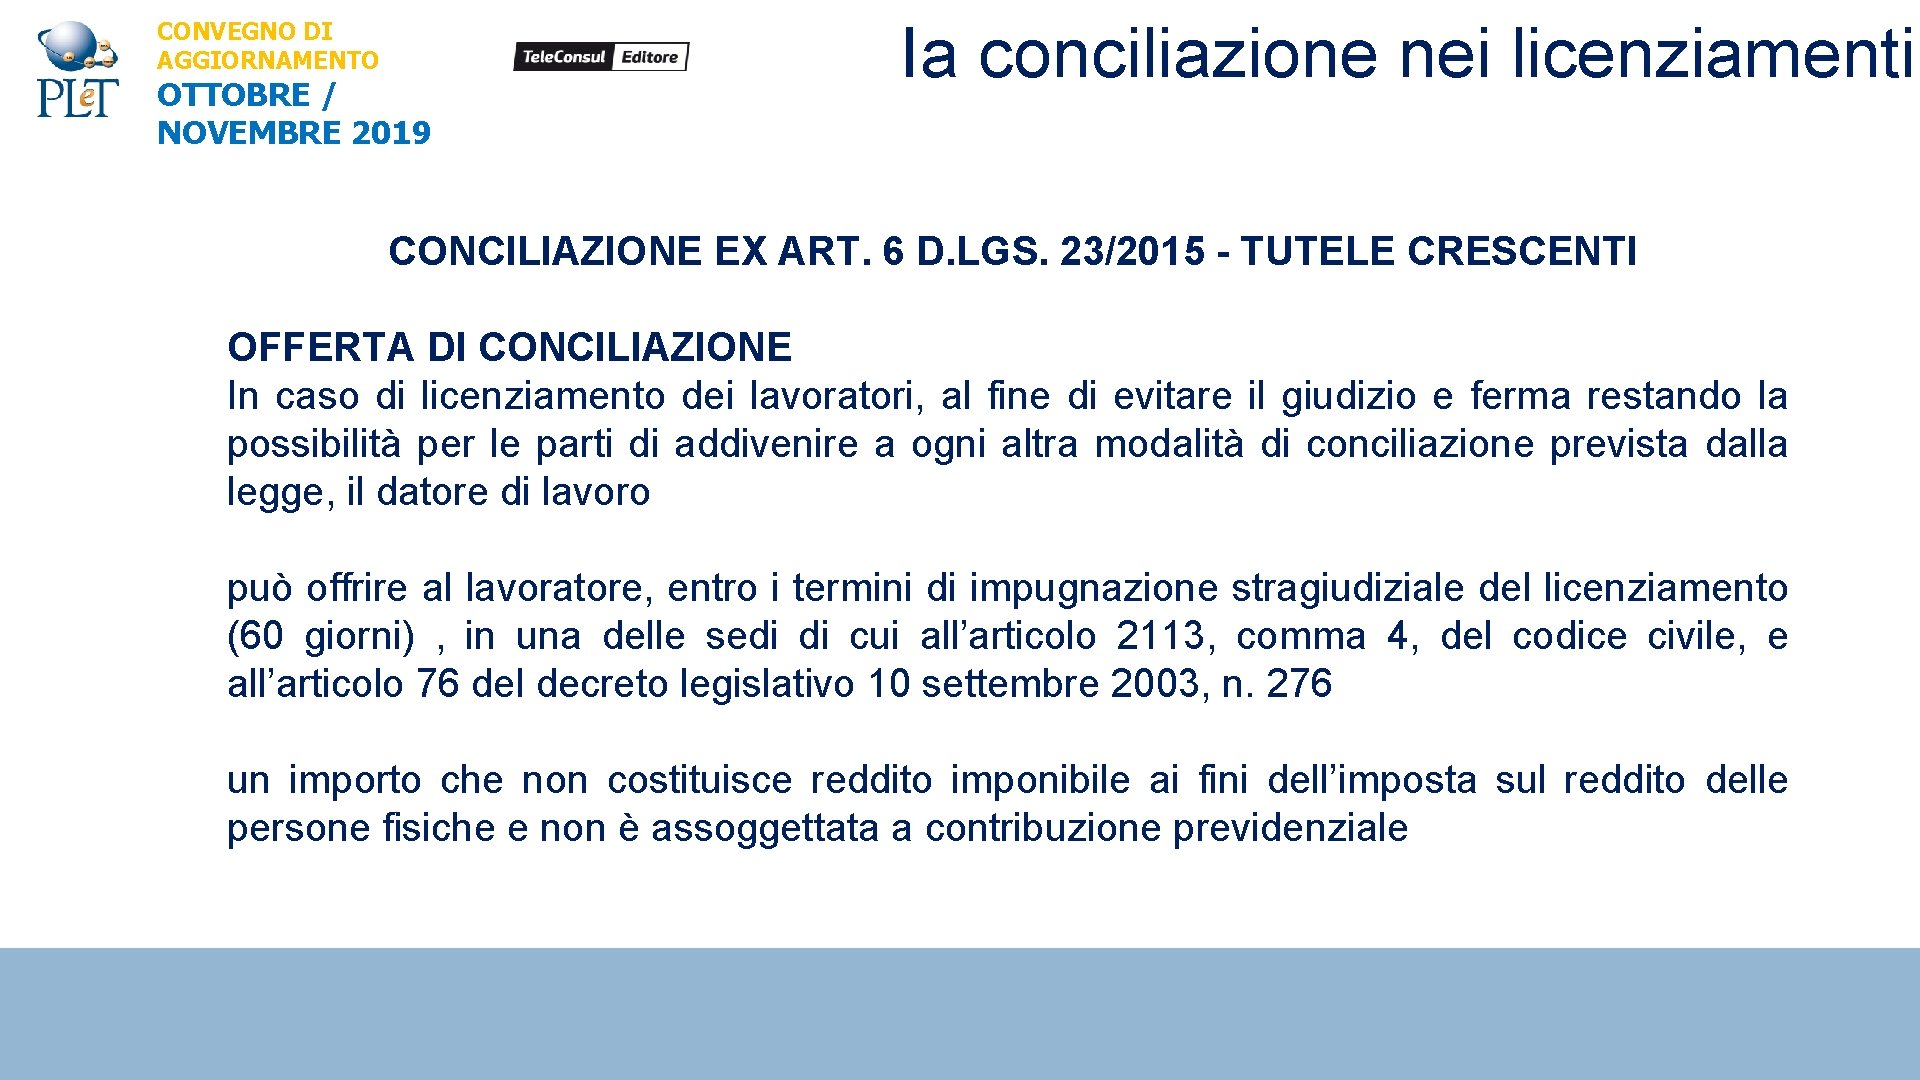 CONVEGNO DI AGGIORNAMENTO OTTOBRE / NOVEMBRE 2019 Ia conciliazione nei licenziamenti CONCILIAZIONE EX ART.